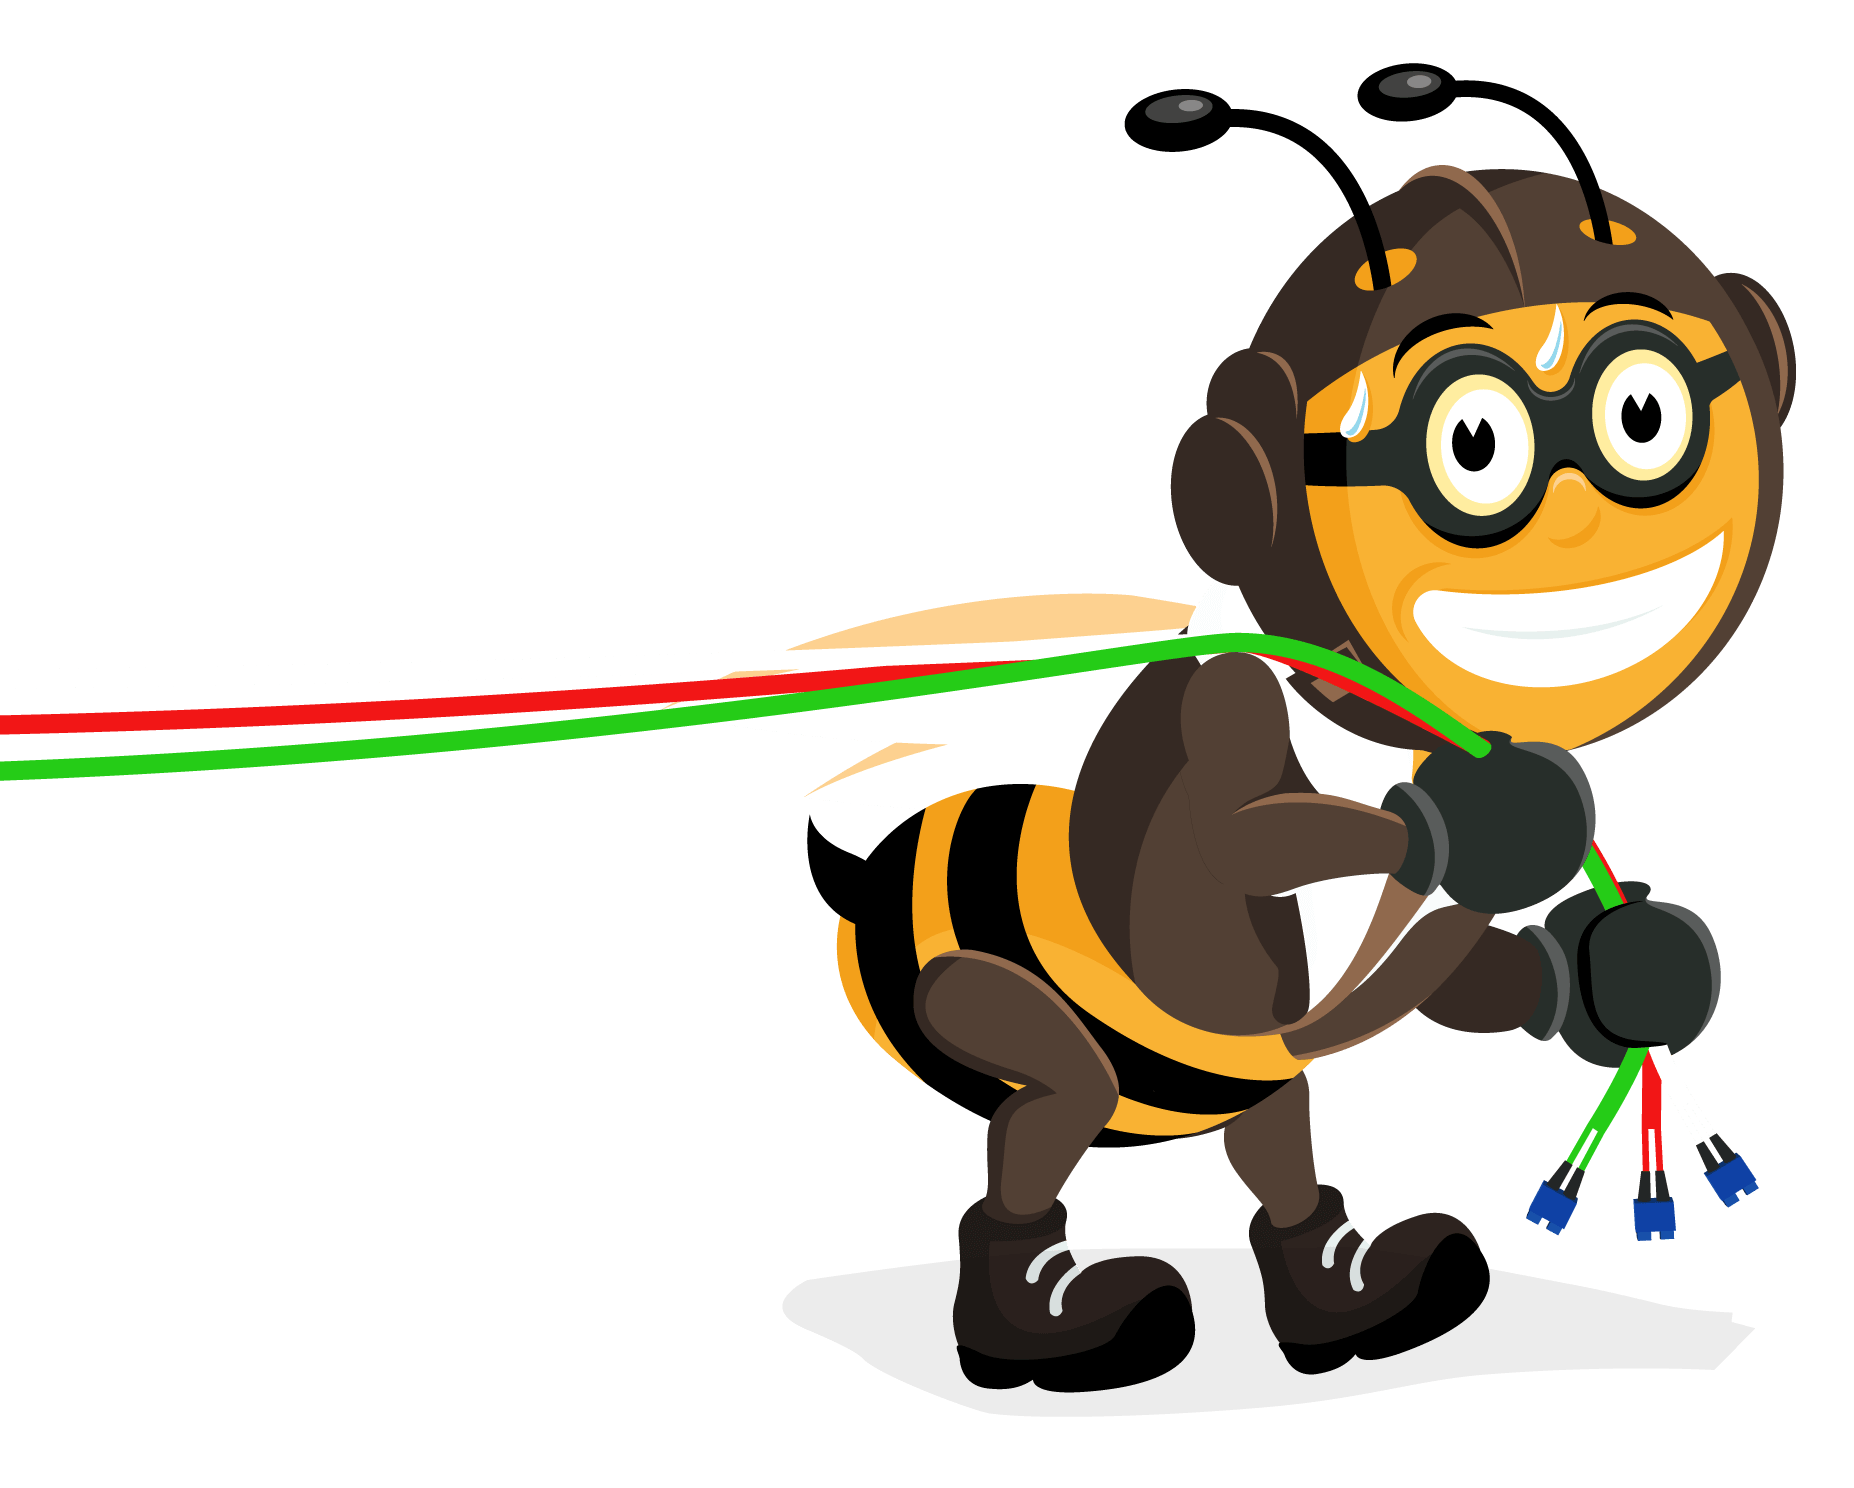 snel.com bee-network